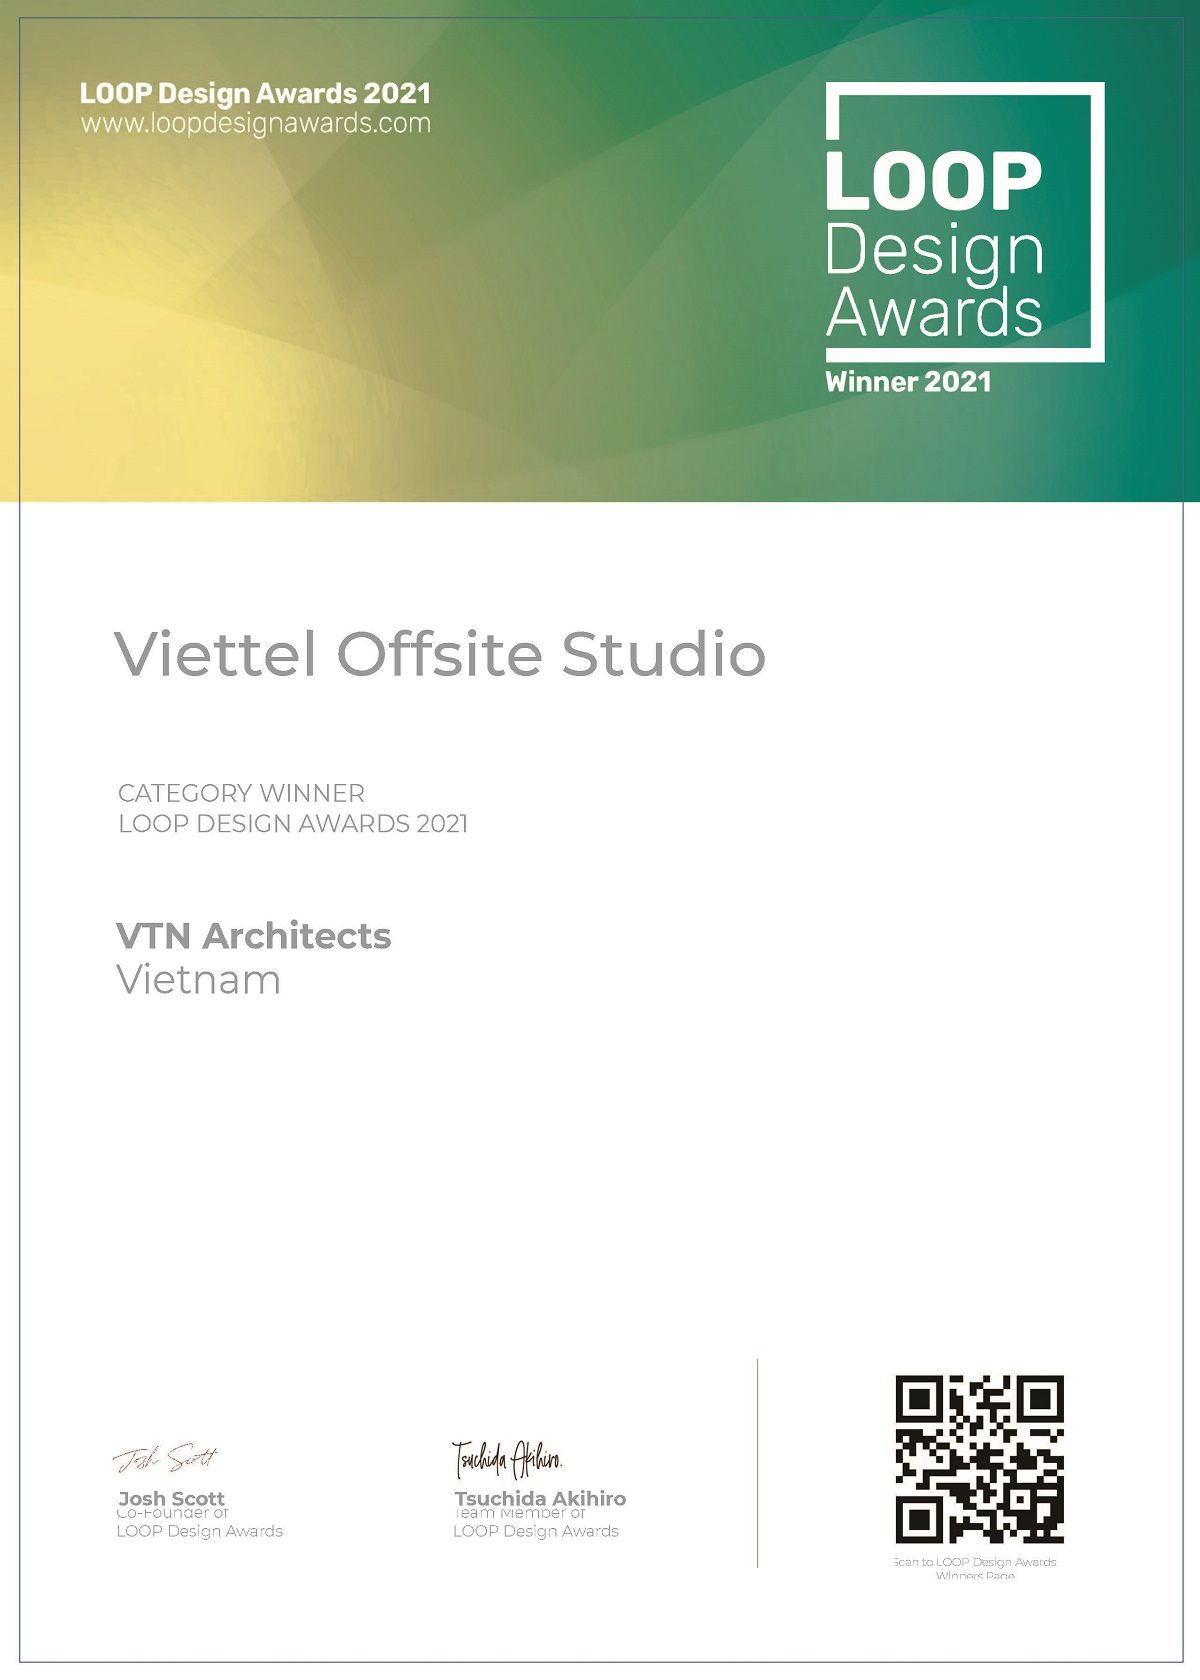 Võ Trọng Nghĩa Architects đạt giải thưởng LOOP Design Award 2021 với công trình Viettel Offside Studio